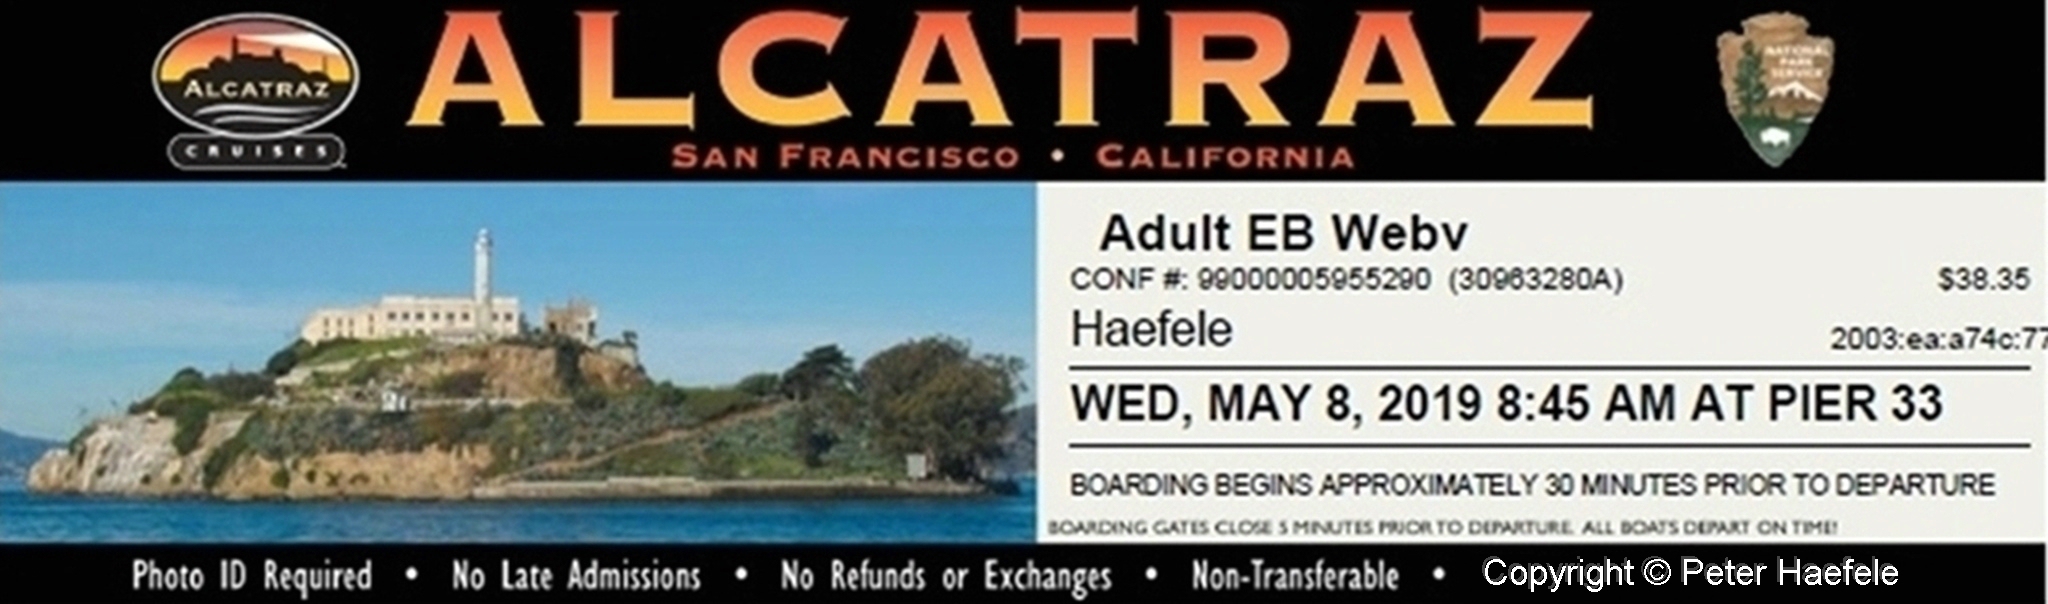 Alcatraz Ticket